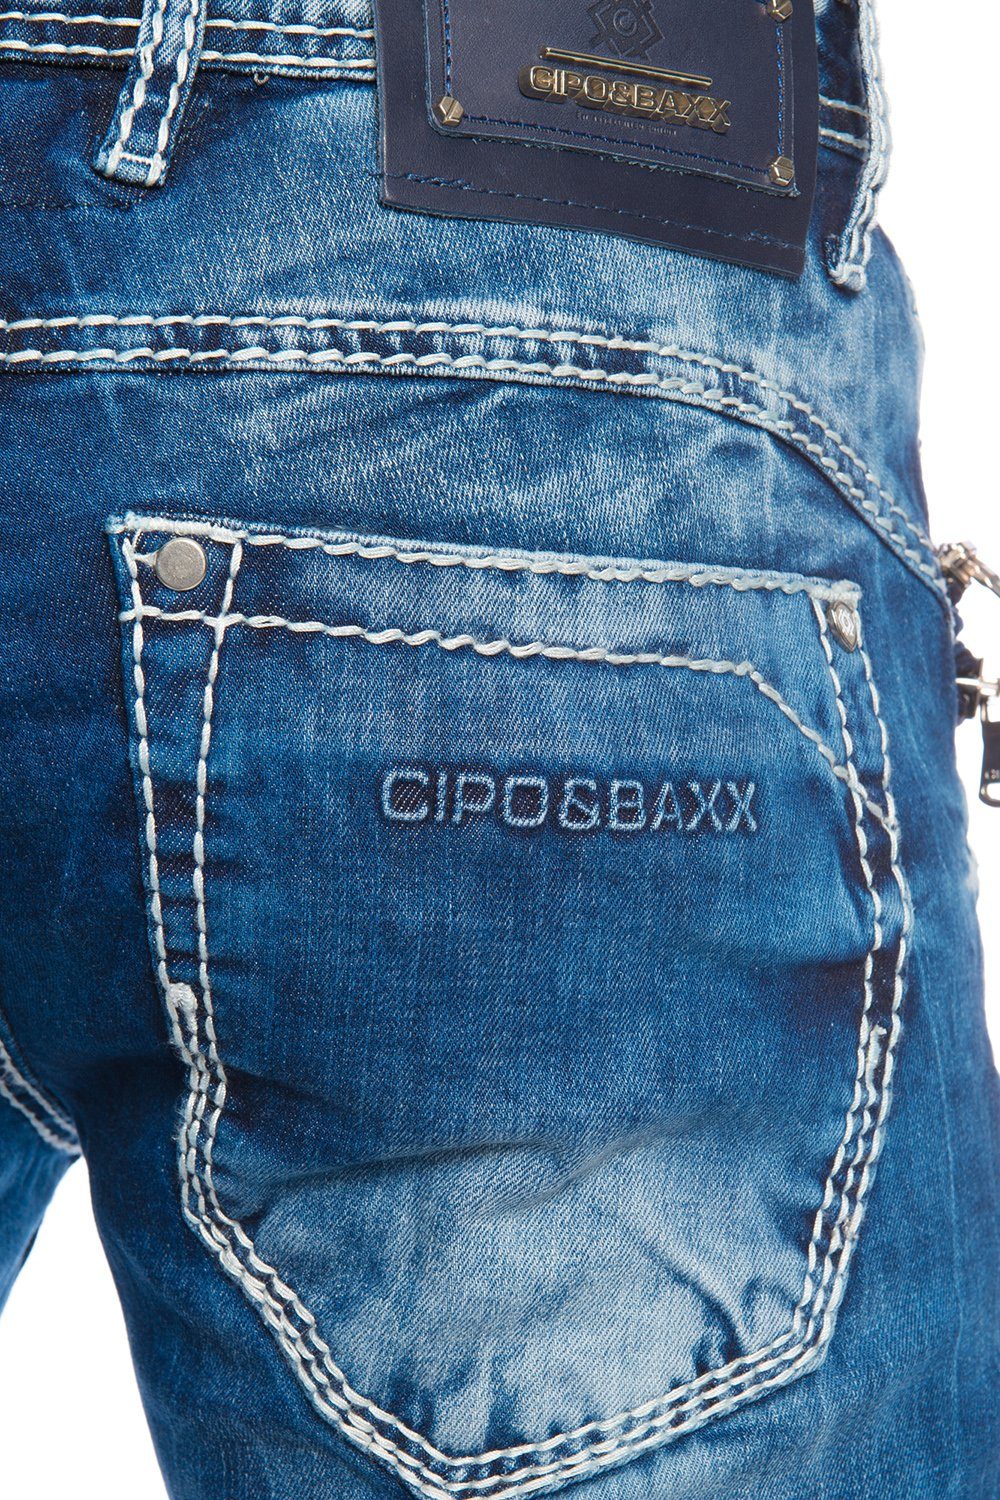 Hose Jeans Herren Dicke Cipo weiße Zierreißverschlüsse Baxx Slim-fit-Jeans Zippern und mit & Kontrastnähte